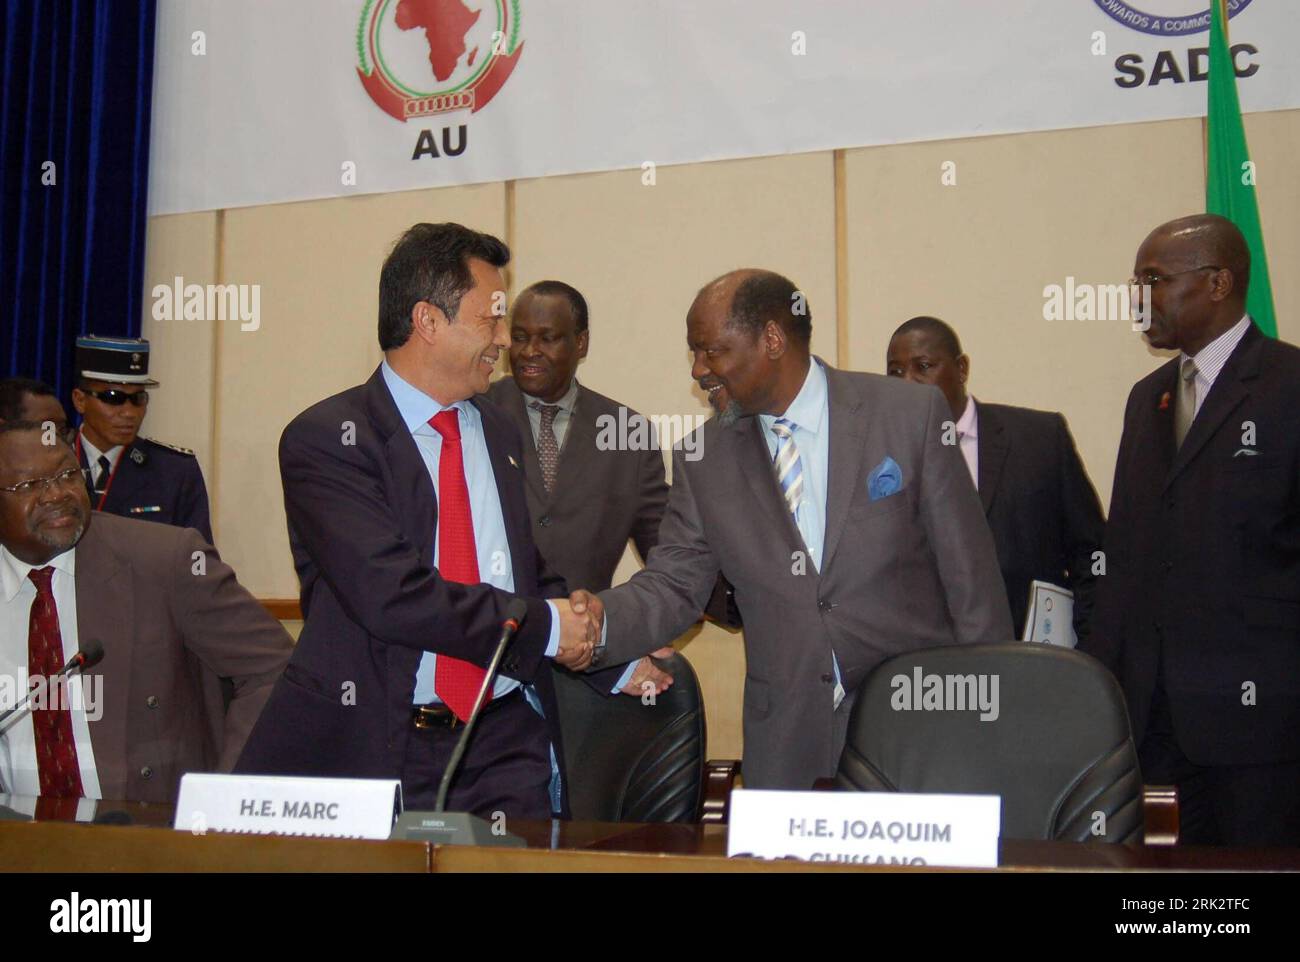 Bildnummer: 53246263 Datum: 06.08.2009 Copyright: imago/Xinhua (090805) -- MAPUTO, 5. August 2009 (Xinhua) -- der ehemalige madagassische Präsident Marc Ravalomanana (L-Front) schüttelt sich die Hände mit Joaquim Alberto Chissano, dem ehemaligen mosambikanischen Präsidenten, vor einem Mehrparteiengespräch (Nachrichtenagentur Xinhua/Mosambik) (gxr) (2)MOSAMBIK-MAPUTO-MADAGASKAR-POLITIKER-GESPRÄCHE PUBLICATIONxNOTxINxCHN People Politik kbdig xdp 2009 quer premiumd Bildnummer 53246263 Datum 06 08 2009 Copyright Imago XINHUA Maputo 5. August 2009 XINHUA ehemaliger madagassischer Präsident Marc Ravalomanana l Front schüttelt Joaquim die Hand Stockfoto